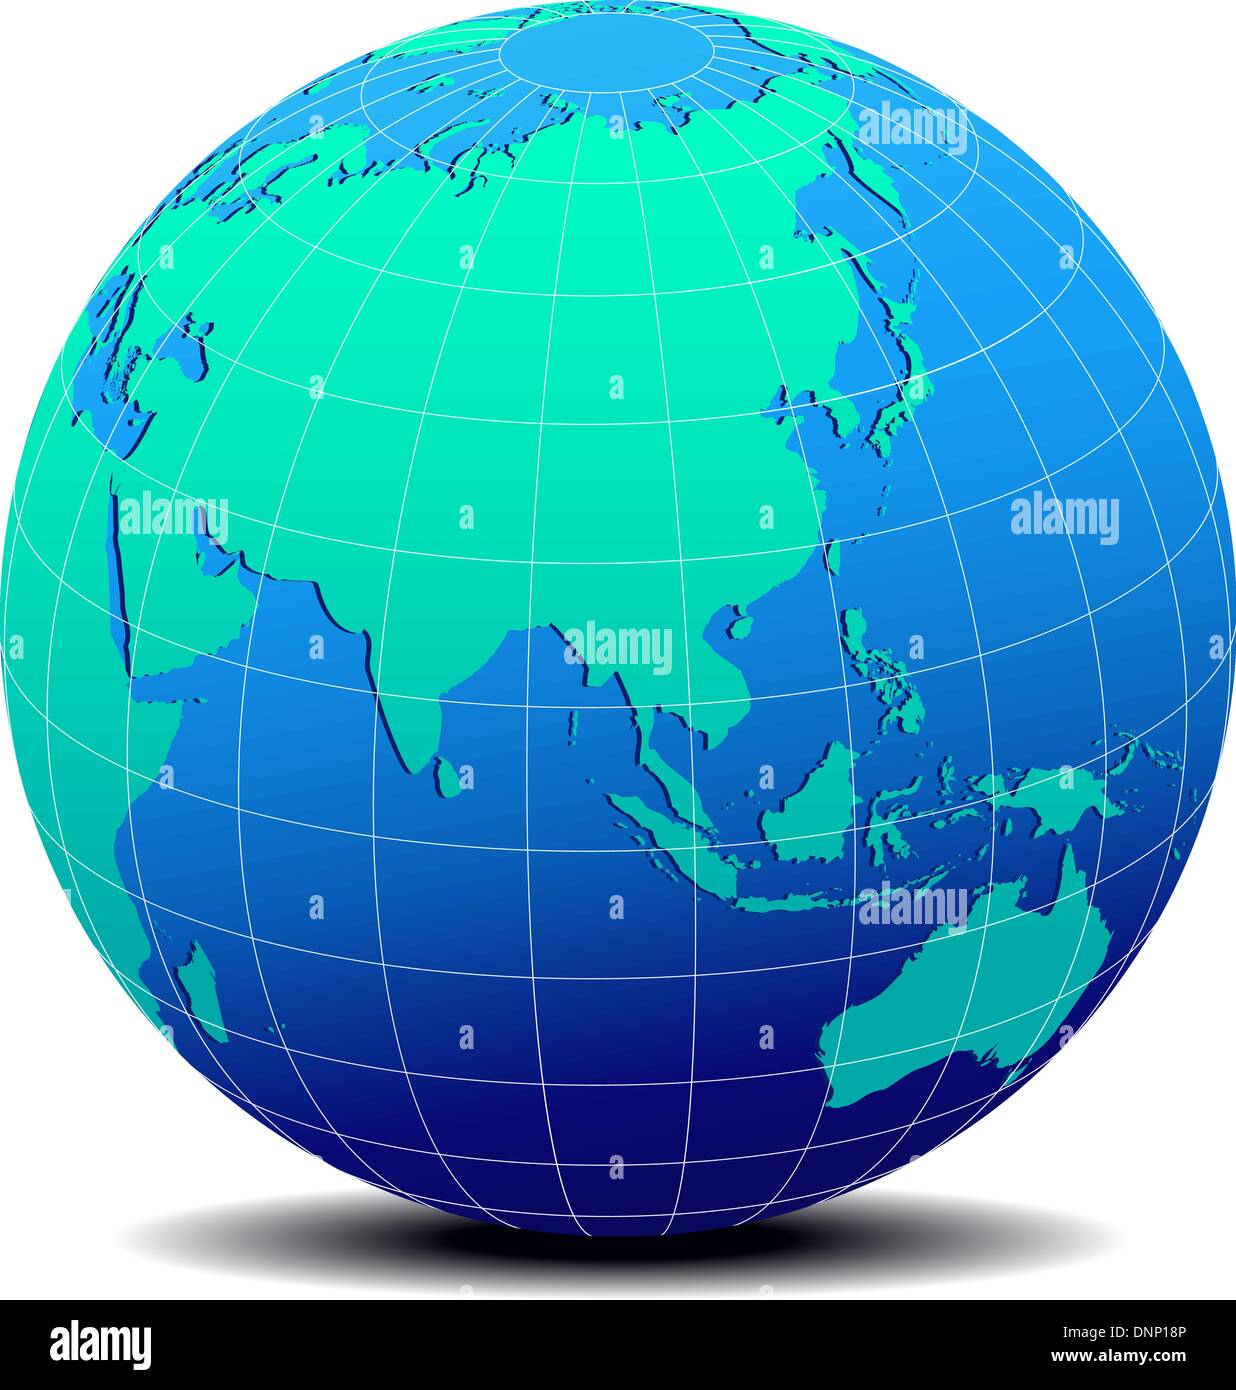 L'icône de carte vectorielle du monde en forme de globe - Asie - Chine, Malaisie, Philippines Illustration de Vecteur